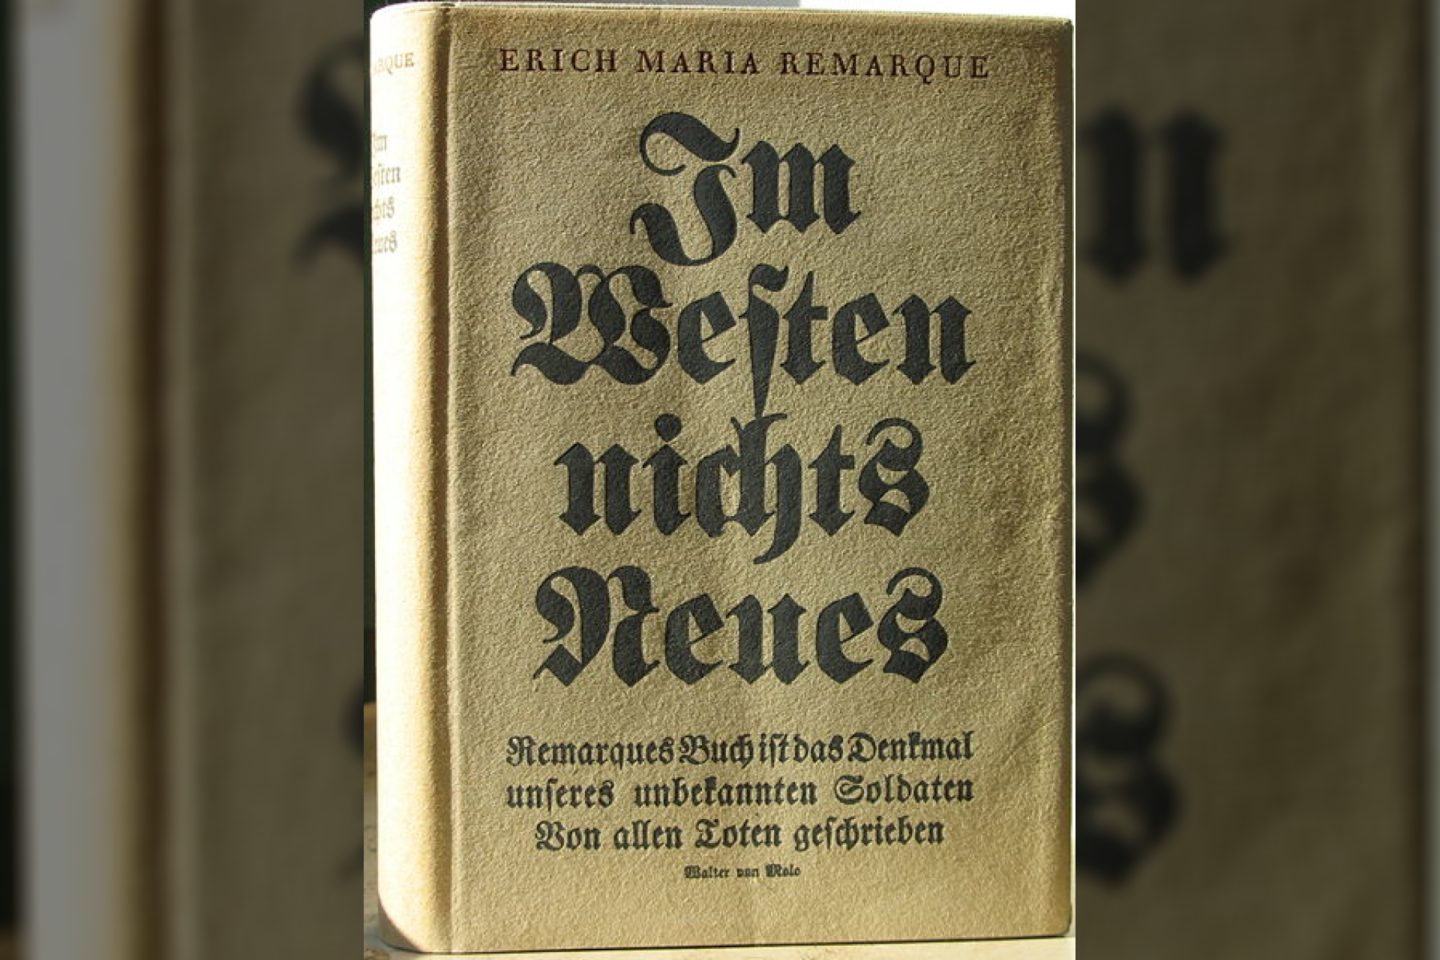 1929 m. Vokietijoje išleistas Ericho Marios Remarque’o romanas „Vakarų fronte nieko naujo“. Per 11 savaičių iš viso buvo parduota 450 tūkst. egzempliorių, ji tapo labiausiai perkama knyga per visą Vokietijos leidybos istoriją, tais pačiais metais išversta į 26 kalbas.